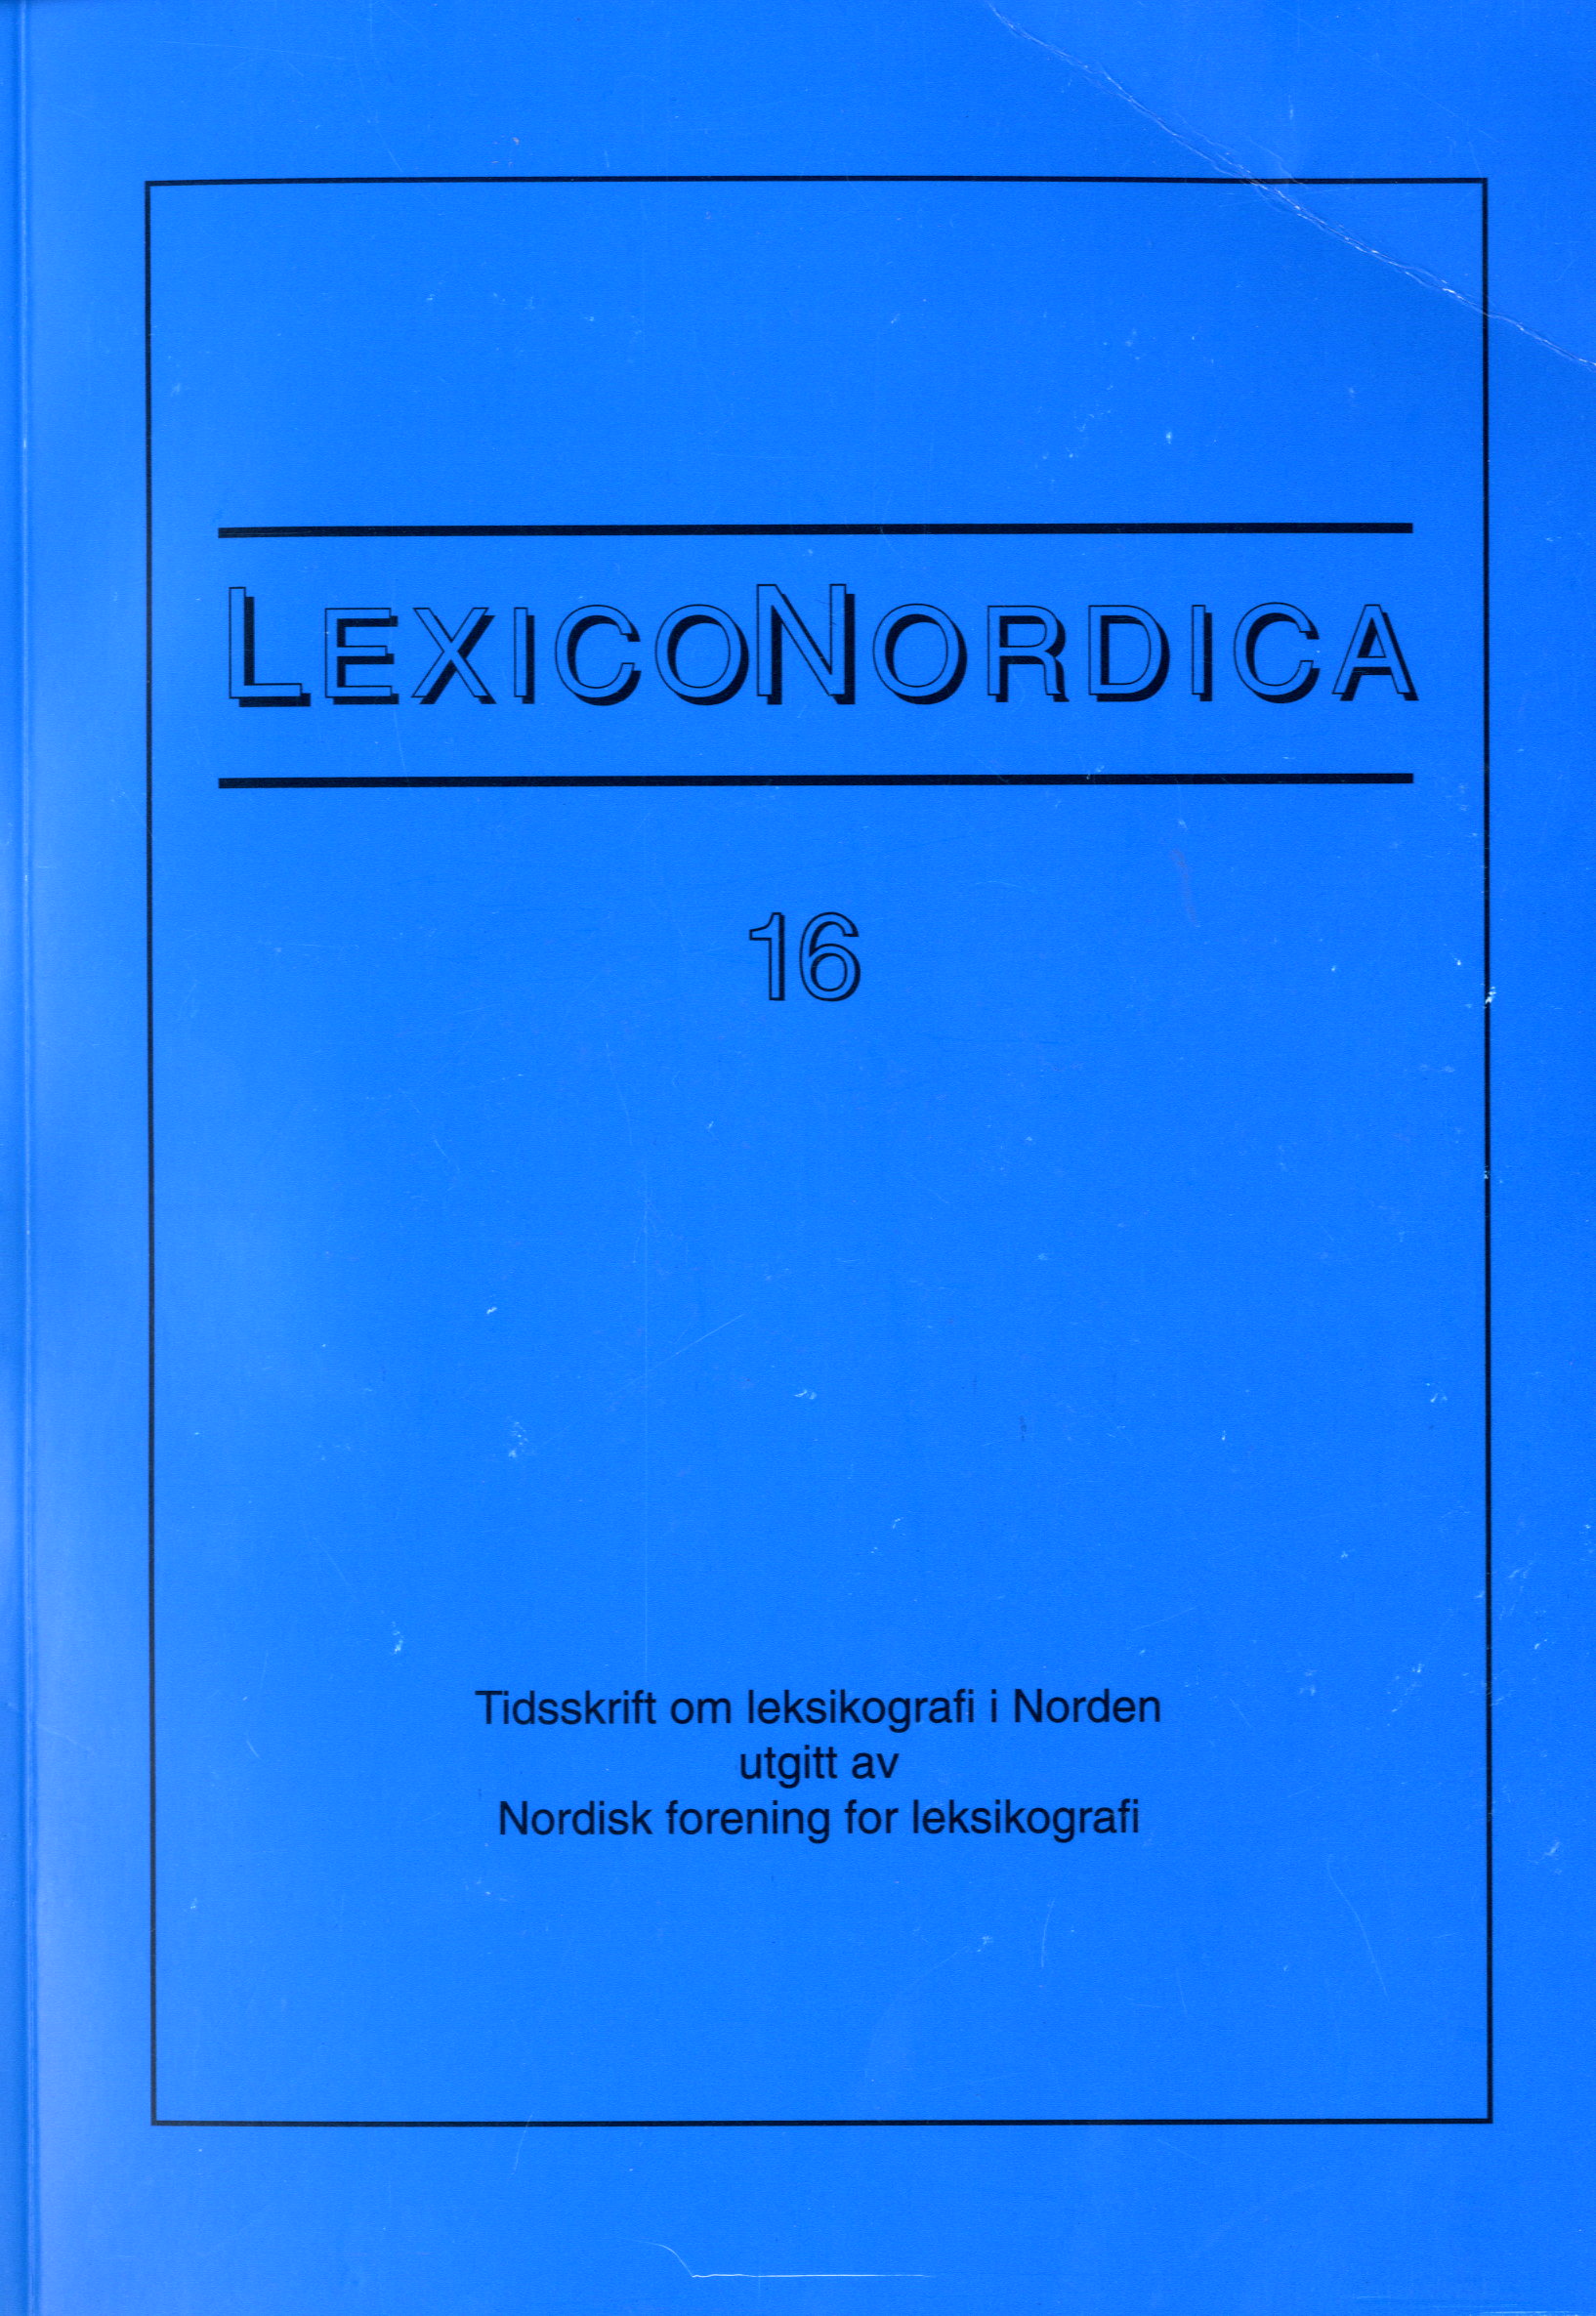 					View No. 16 (2009): Ordforbindelser i monolingvale nordiske ordbøger
				